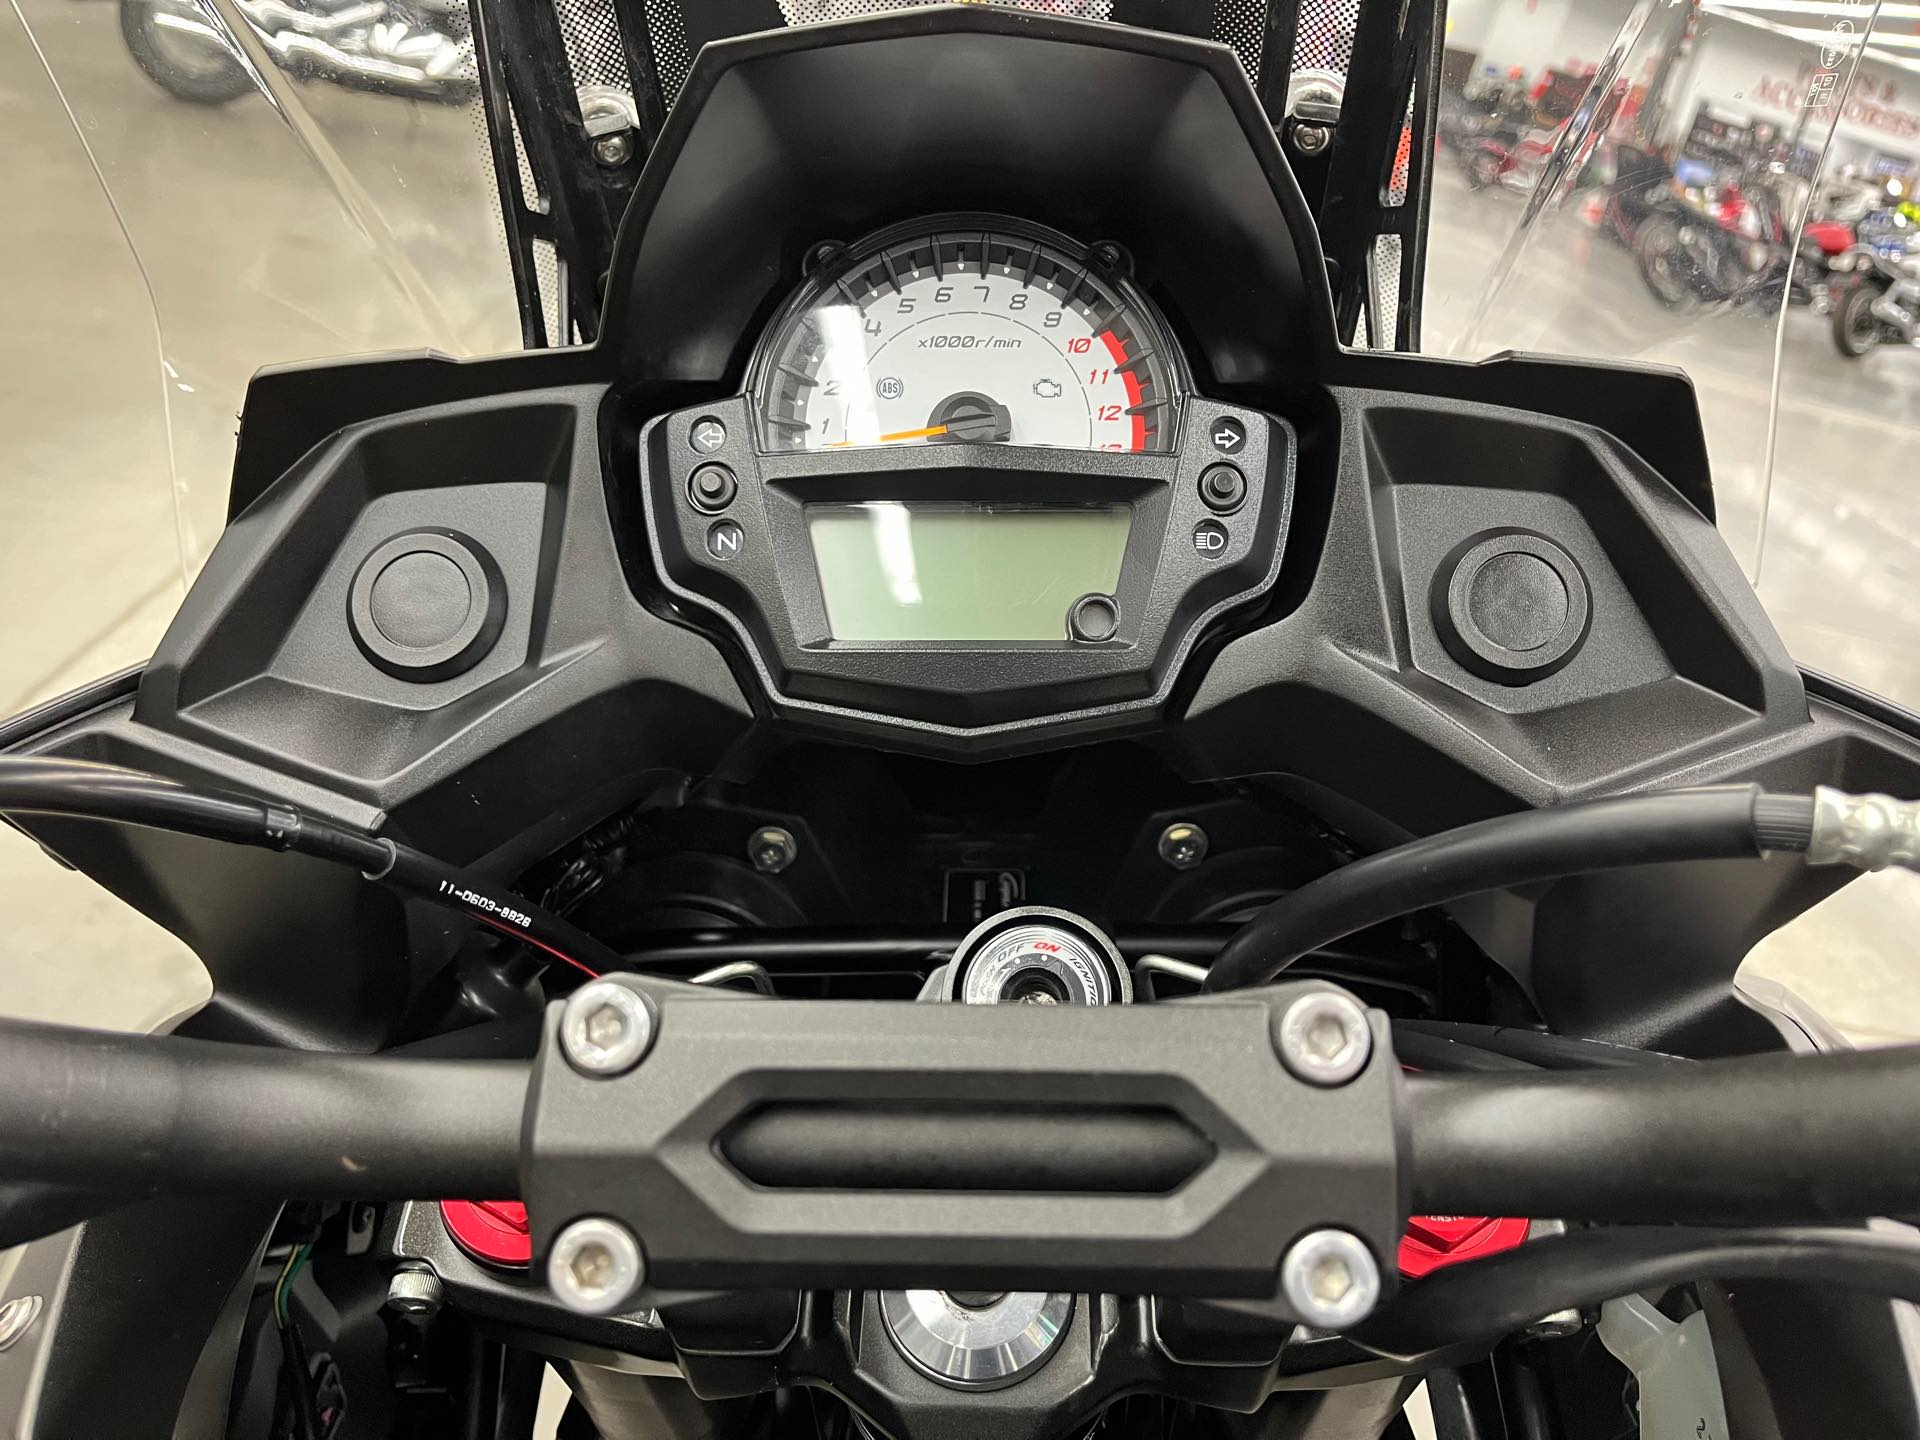 2018 Kawasaki Versys 650 ABS at Aces Motorcycles - Denver